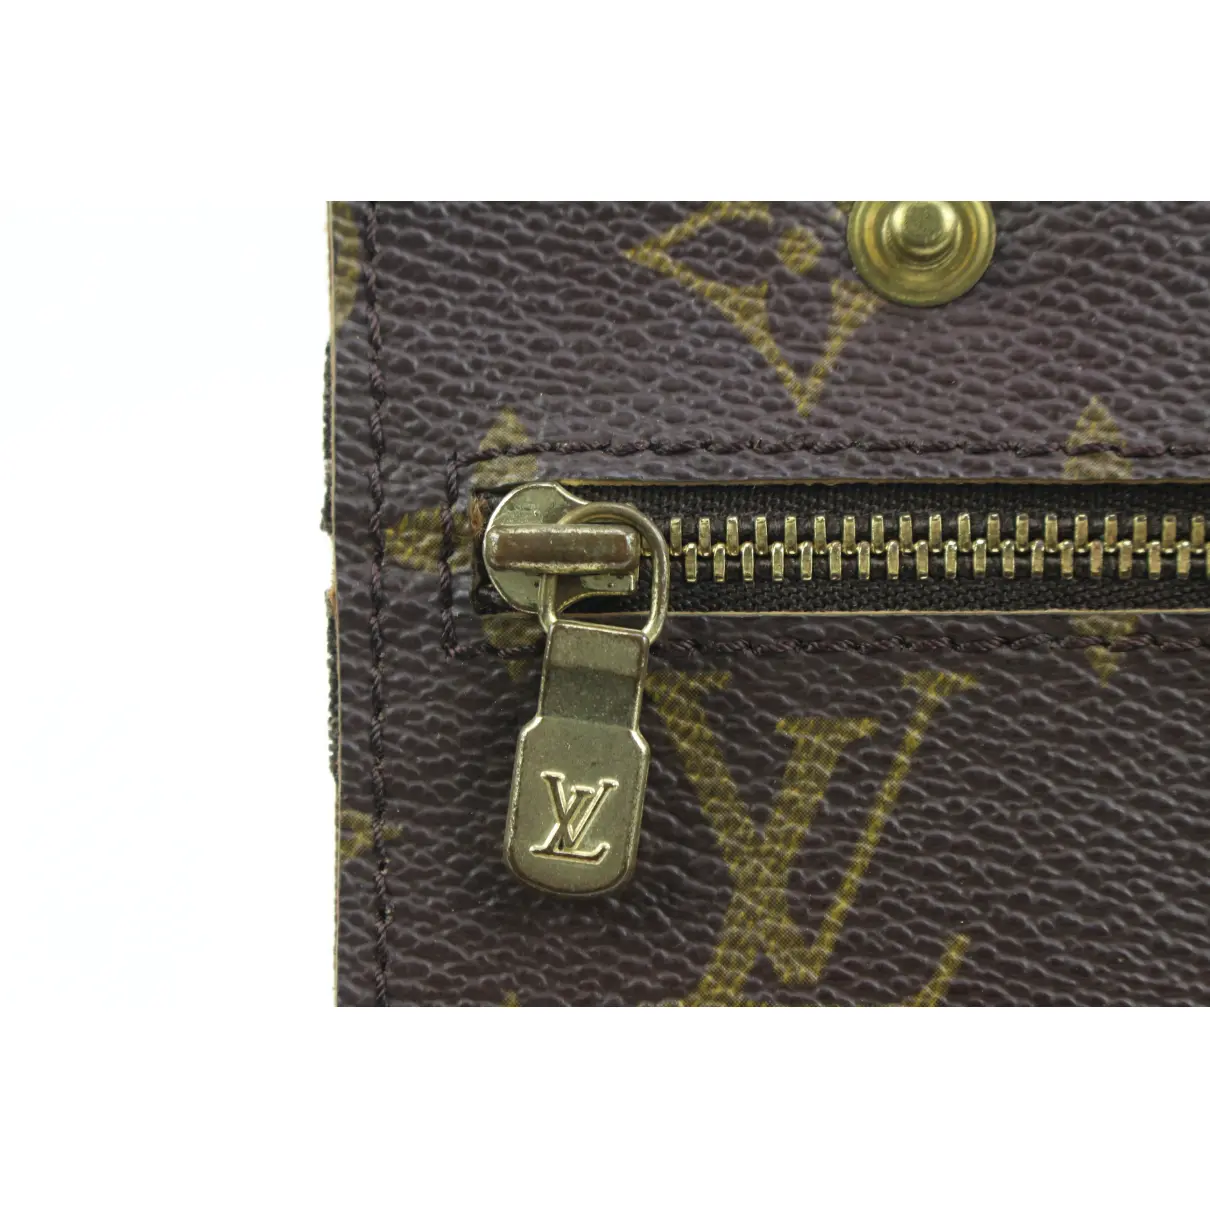 Pochette Voyage cloth clutch bag Louis Vuitton